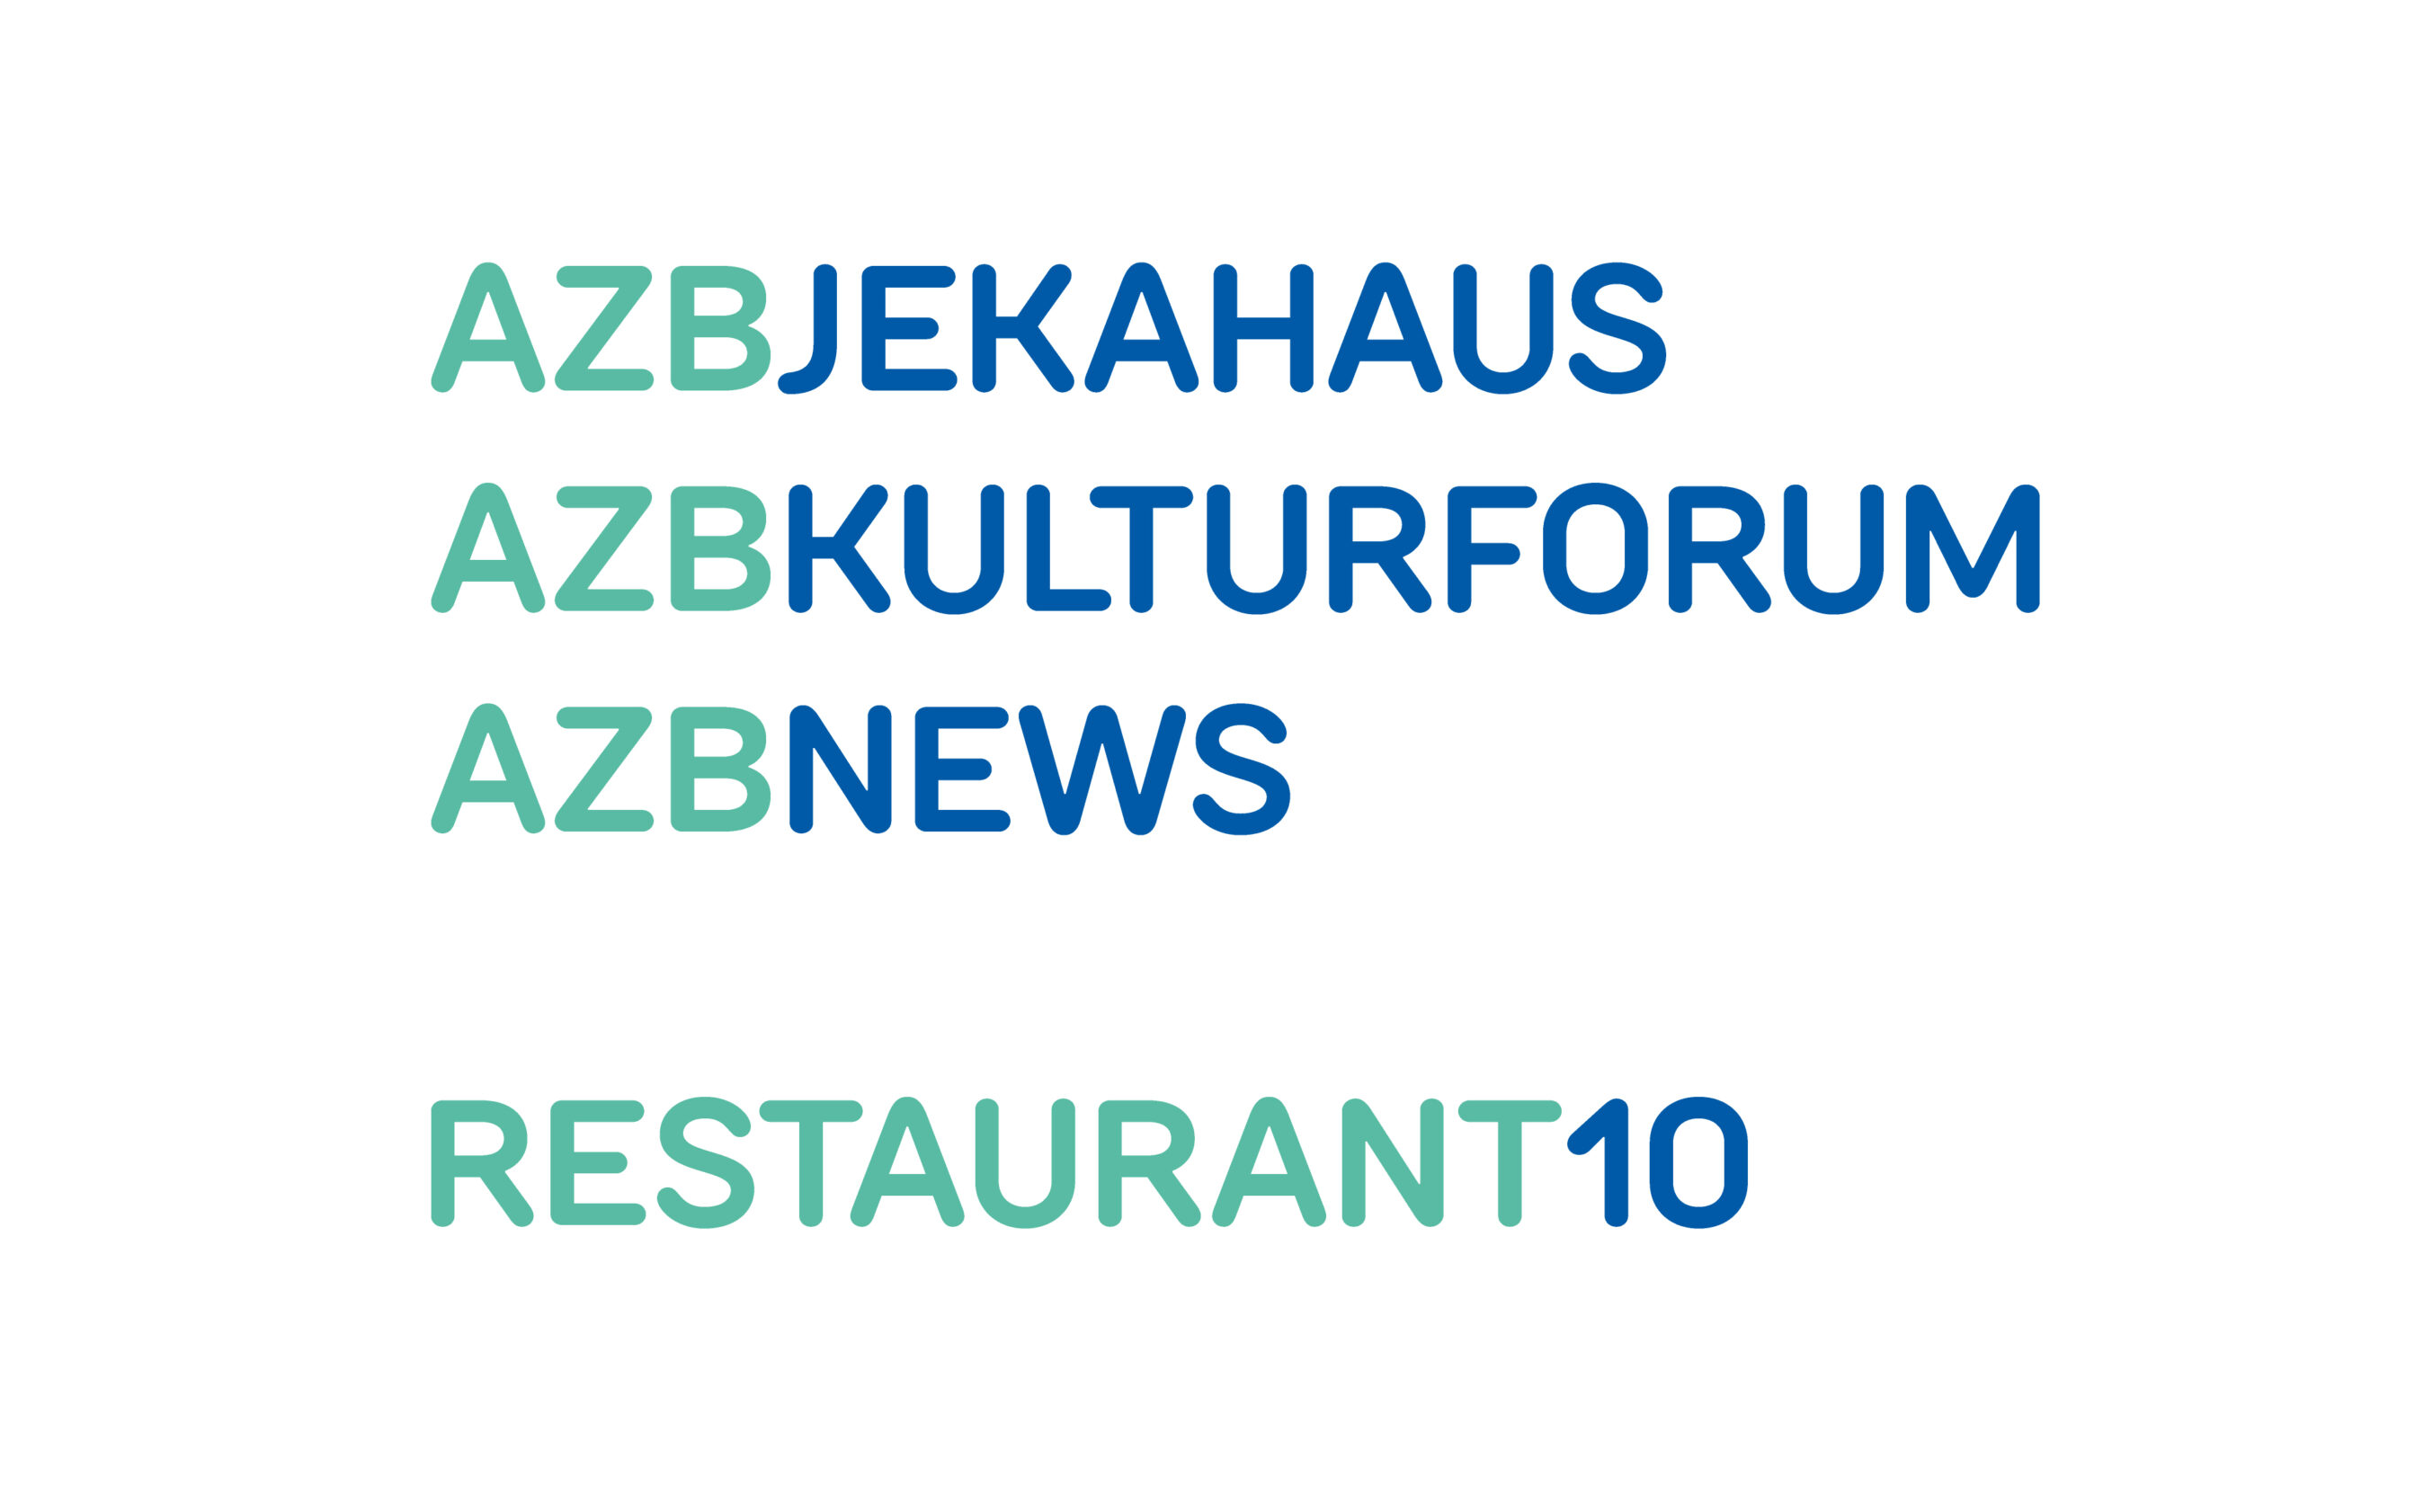 Weitere Marken unter dem Brand AZB. Die Design-Regel setzt die Hauptfarbe Blau auf das Departement oder das Medium um diese hervorzuheben. Die Dach-Marke AZB wird grün dargestellt.